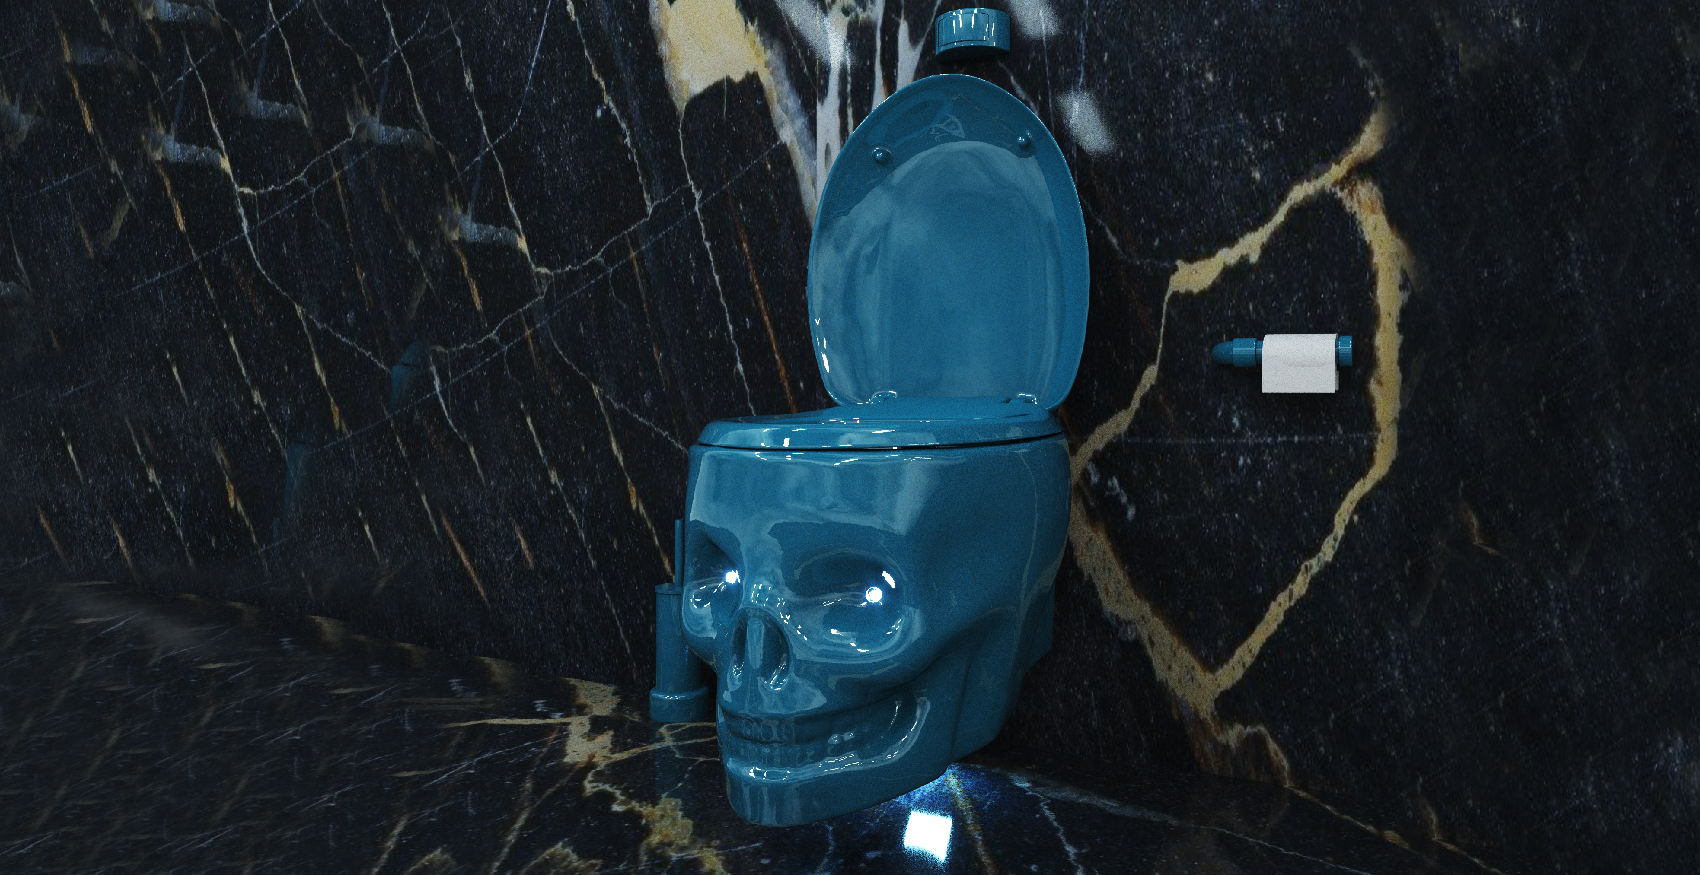 water throne bleu wc tete de mort toilet skull